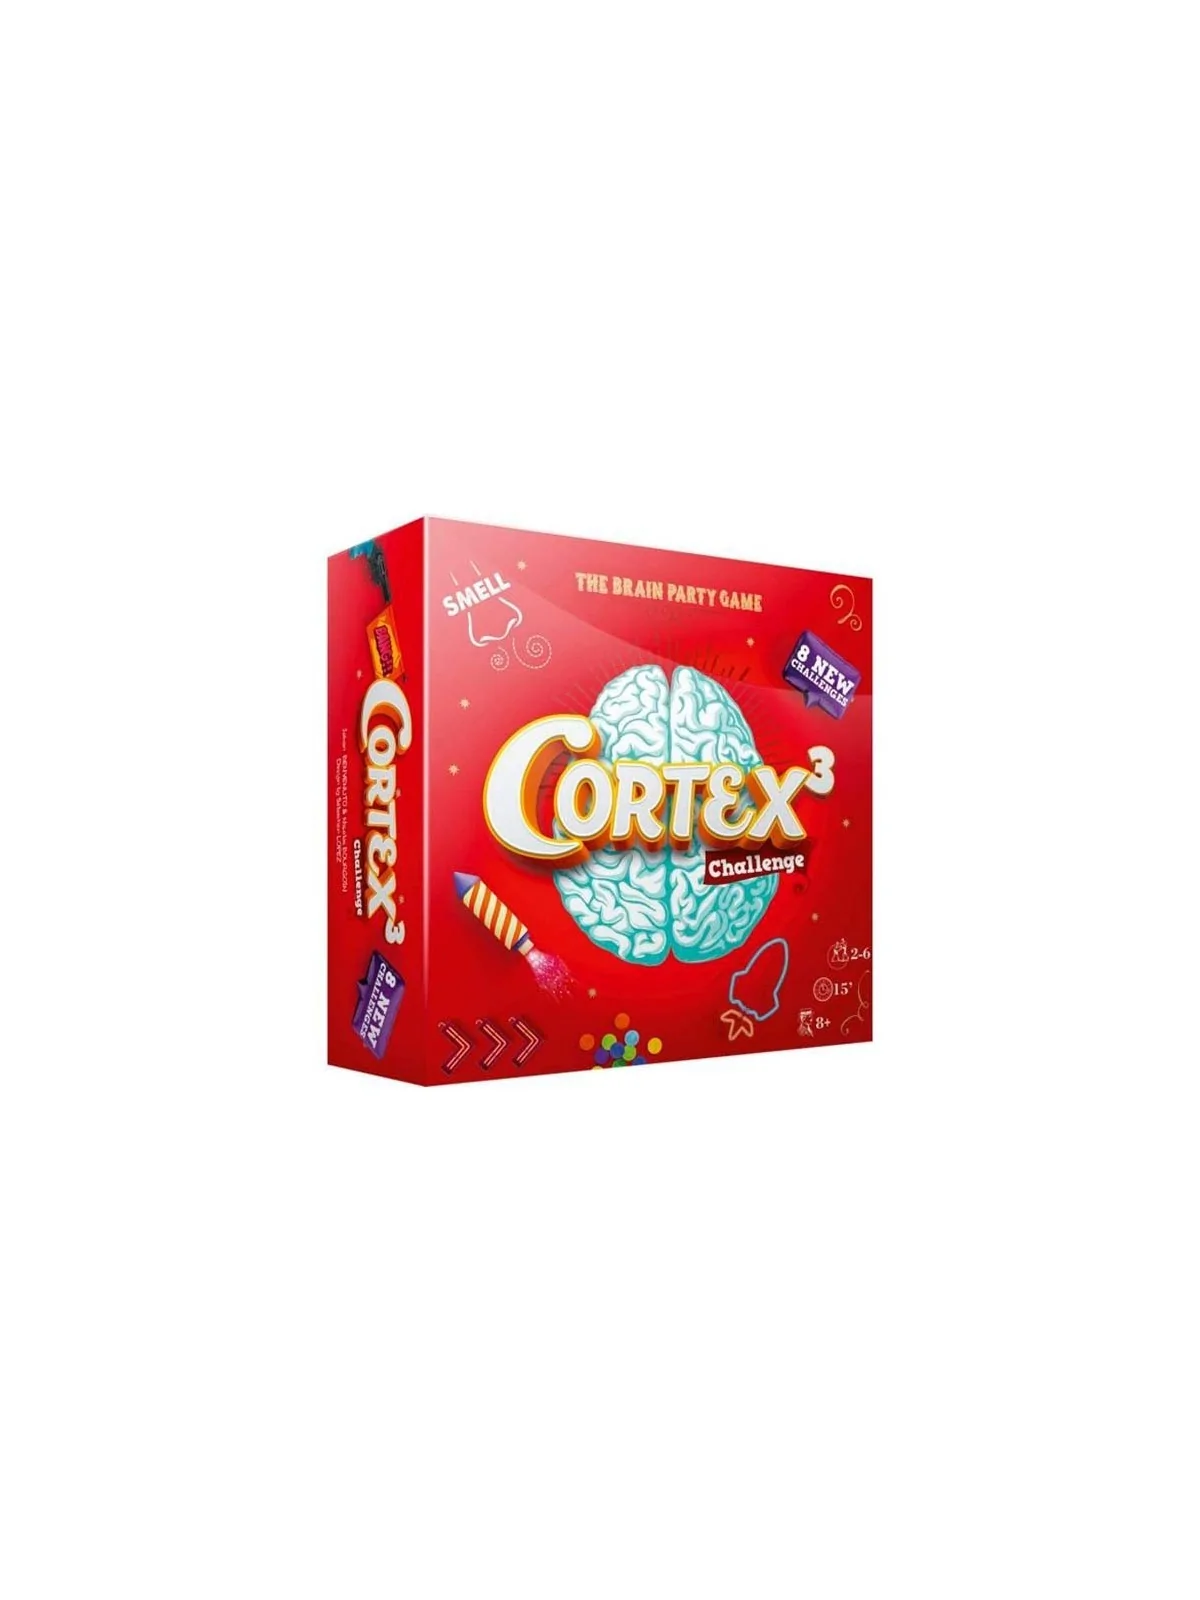 Comprar Cortex 3 Challenge barato al mejor precio 14,39 € de Zygomatic